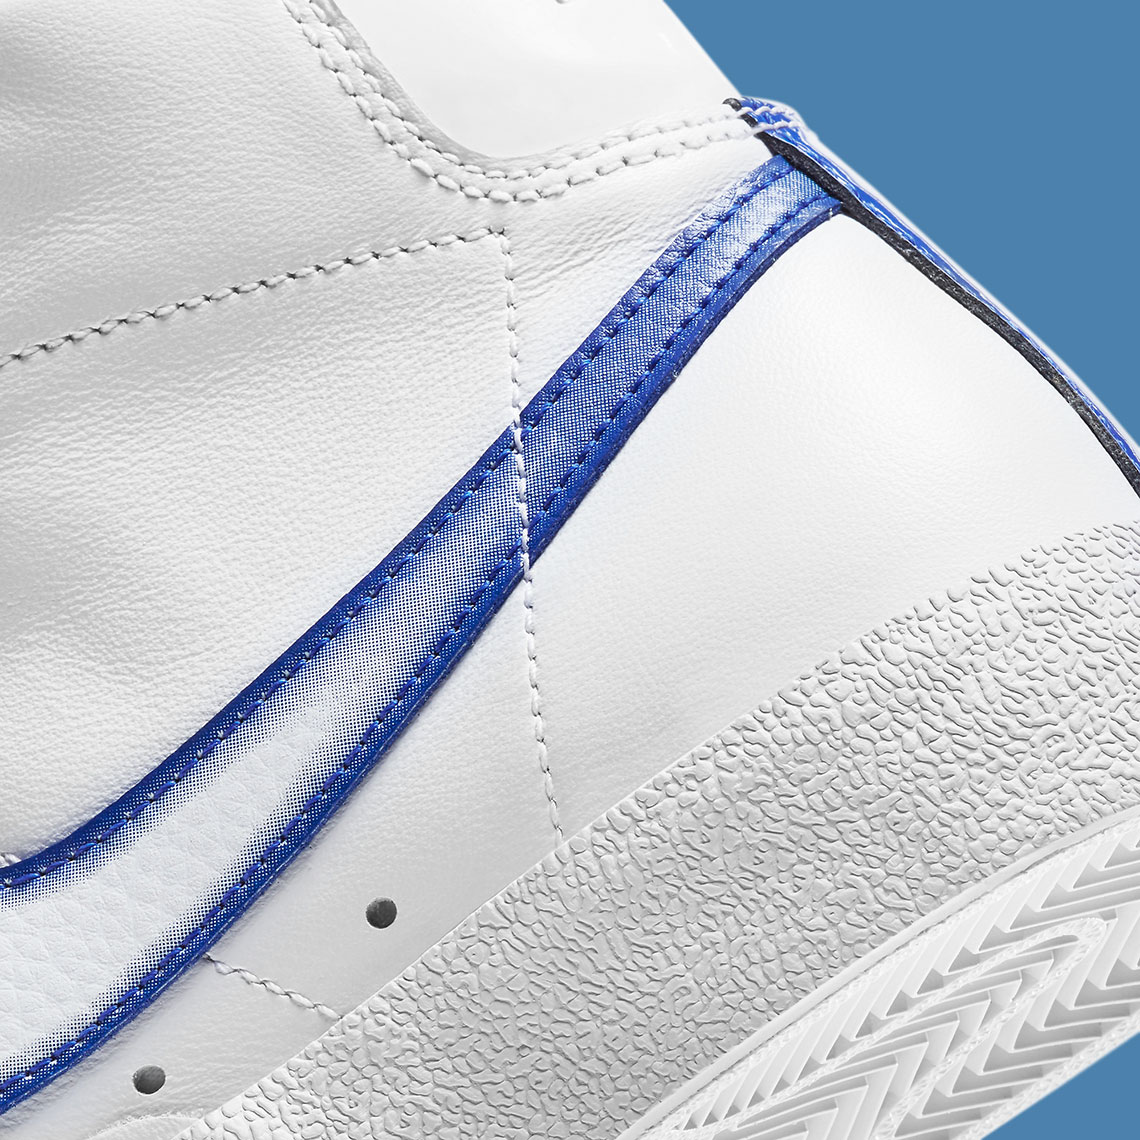 Nike Nike Air Max 98 Wmns Premium Leopard Pack White Royal Dd9685 100 3